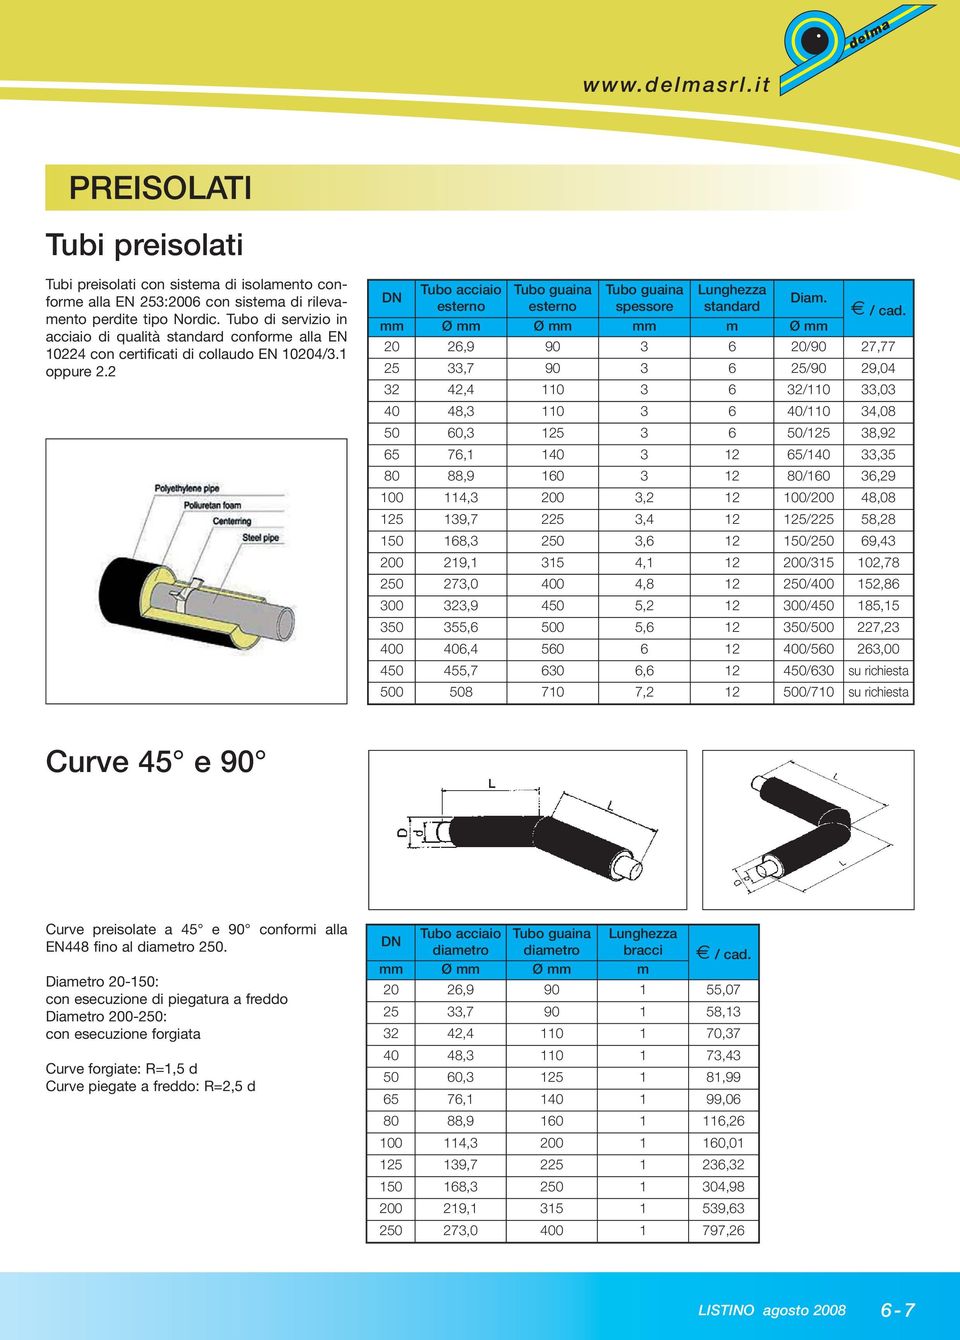 2 Tubo acciaio esterno Tubo guaina esterno Tubo guaina spessore Lunghezza standard DN Diam. / cad.